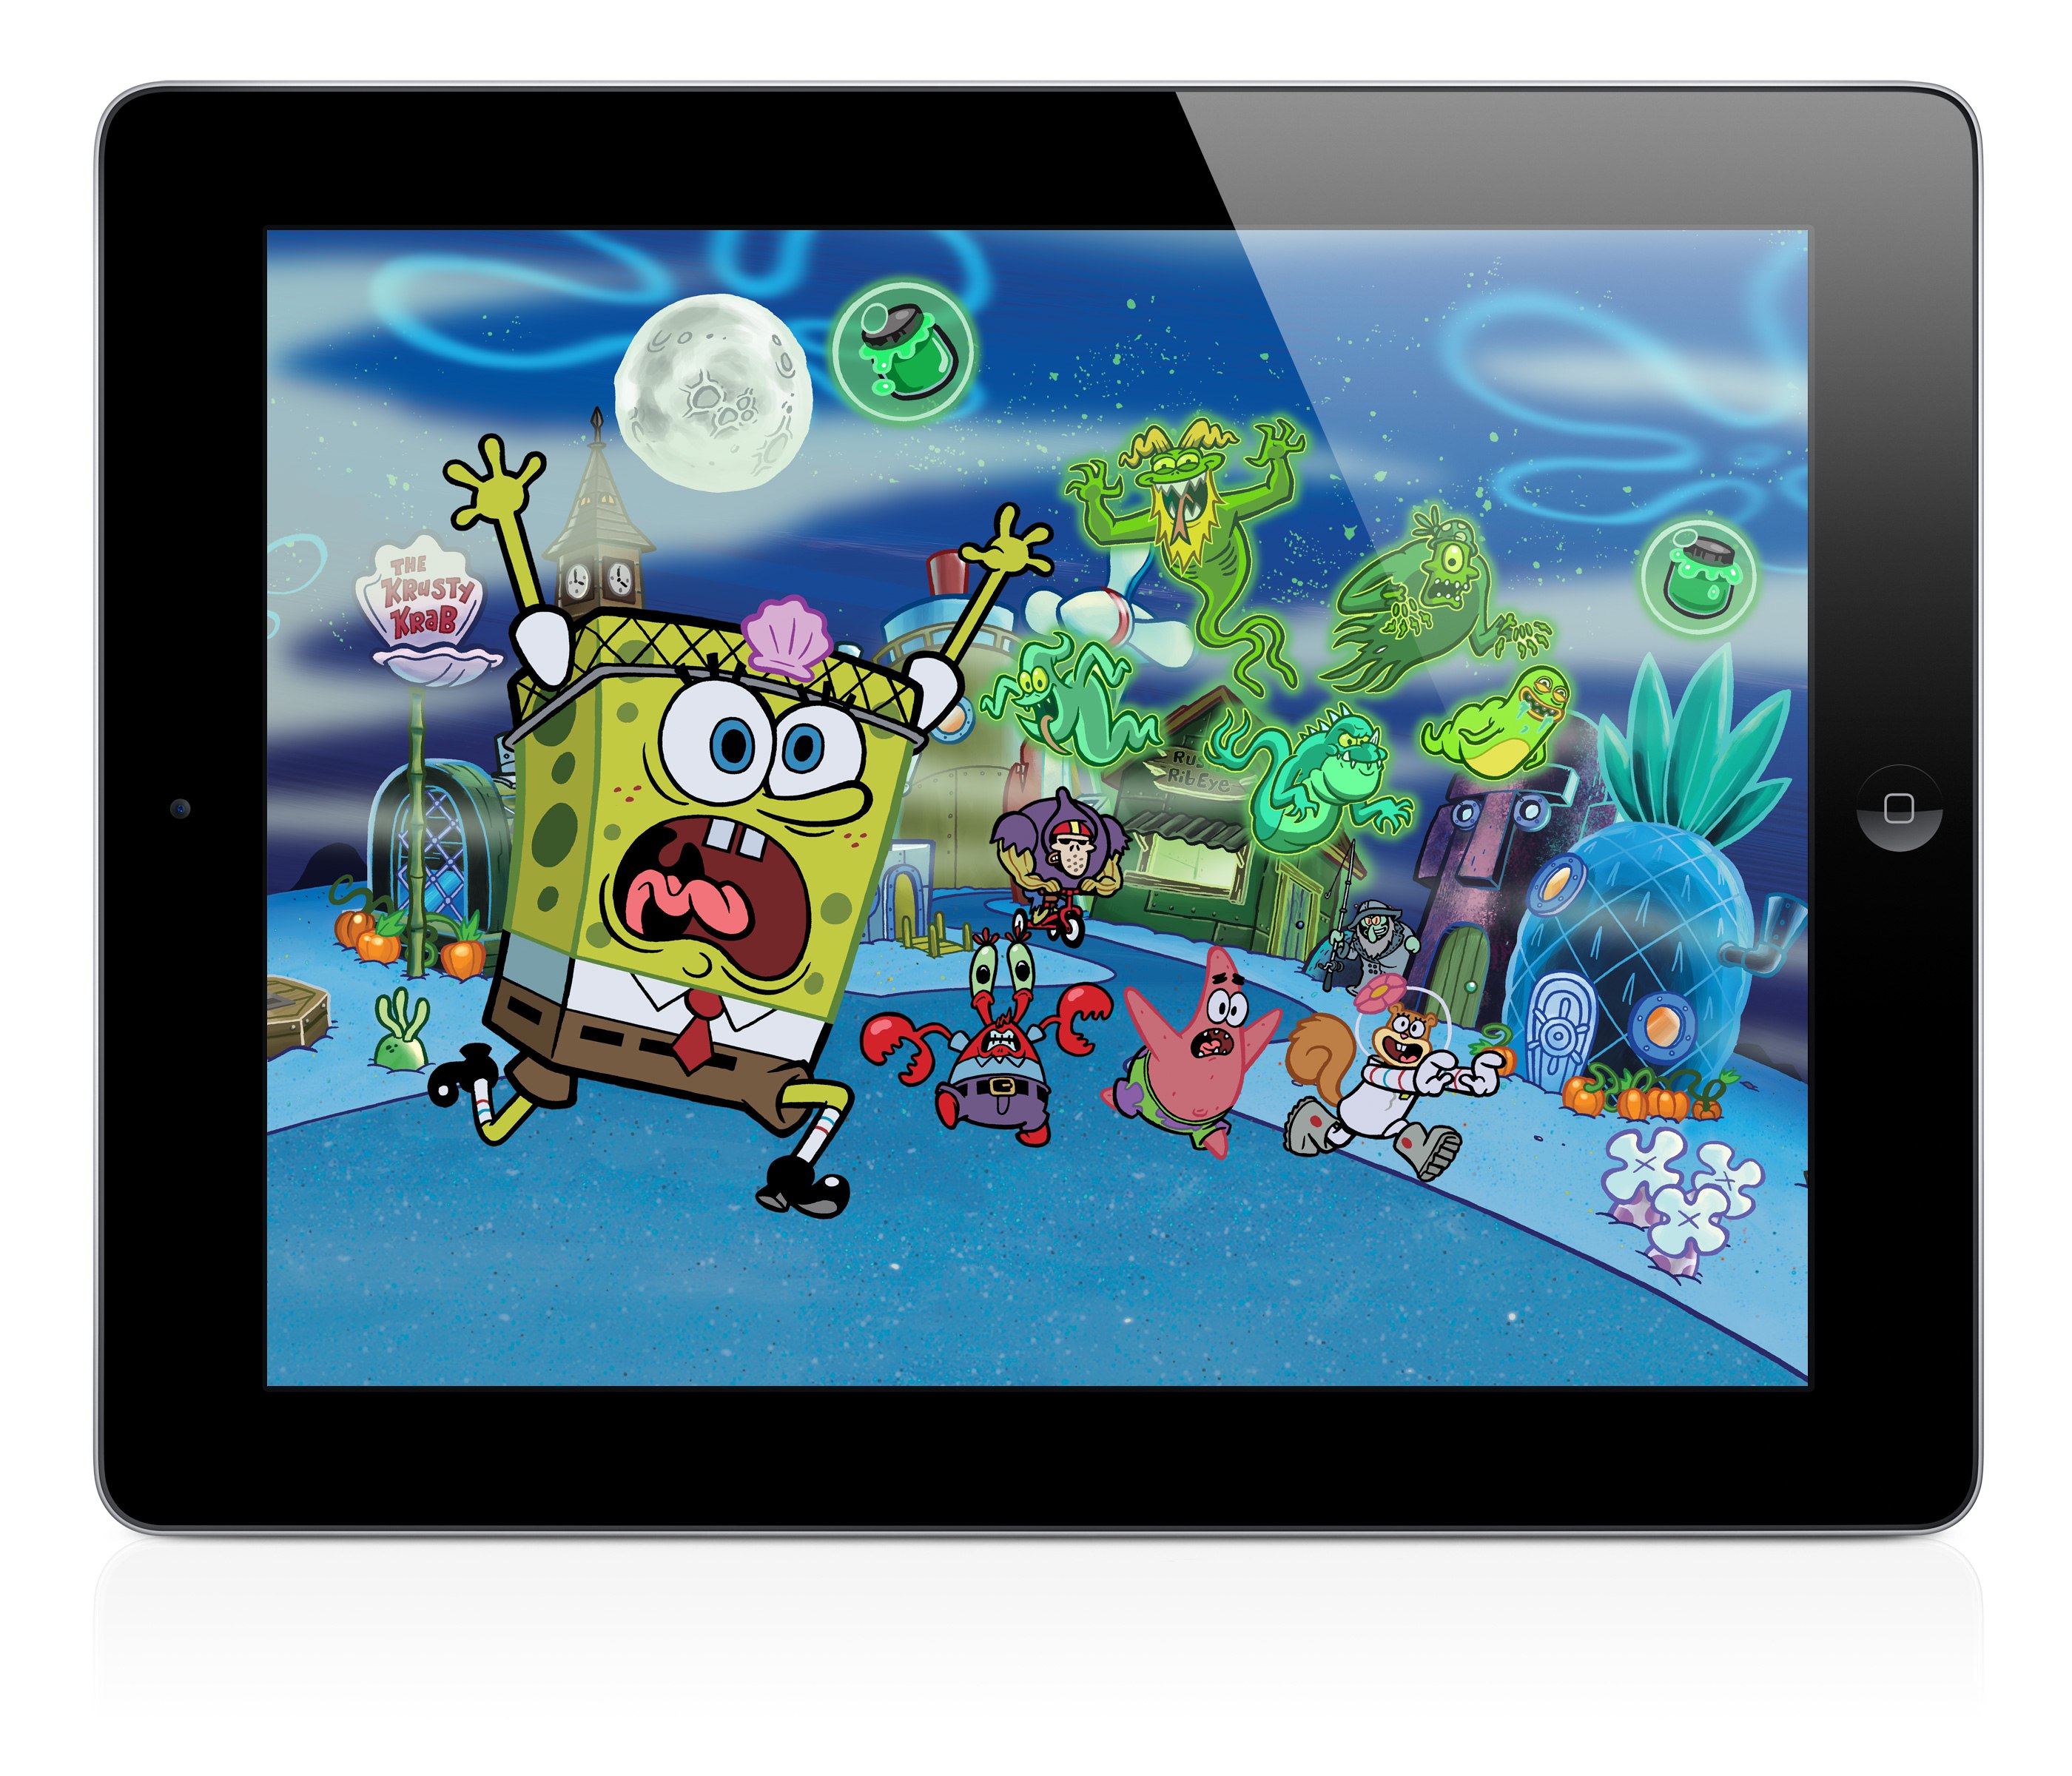 spongebob game apps